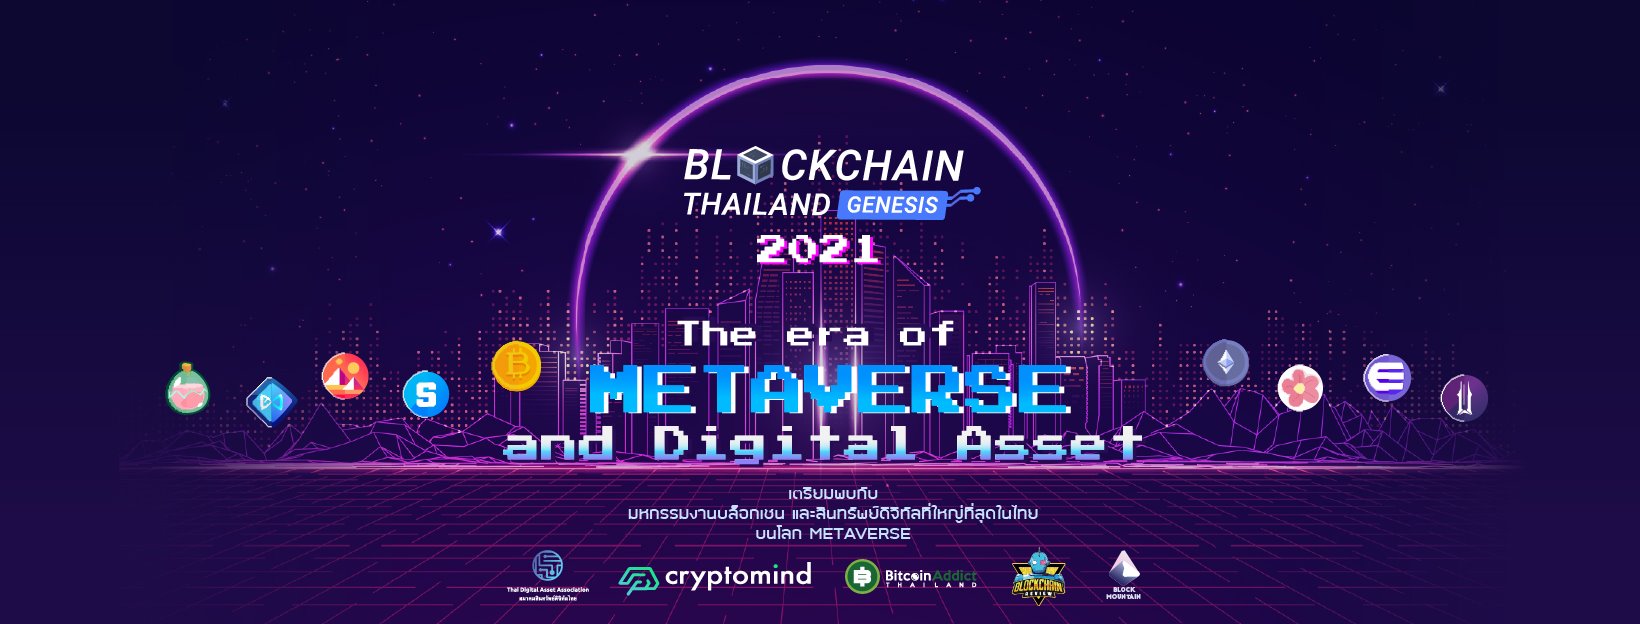 Blockchain Thailand Genesis 2021